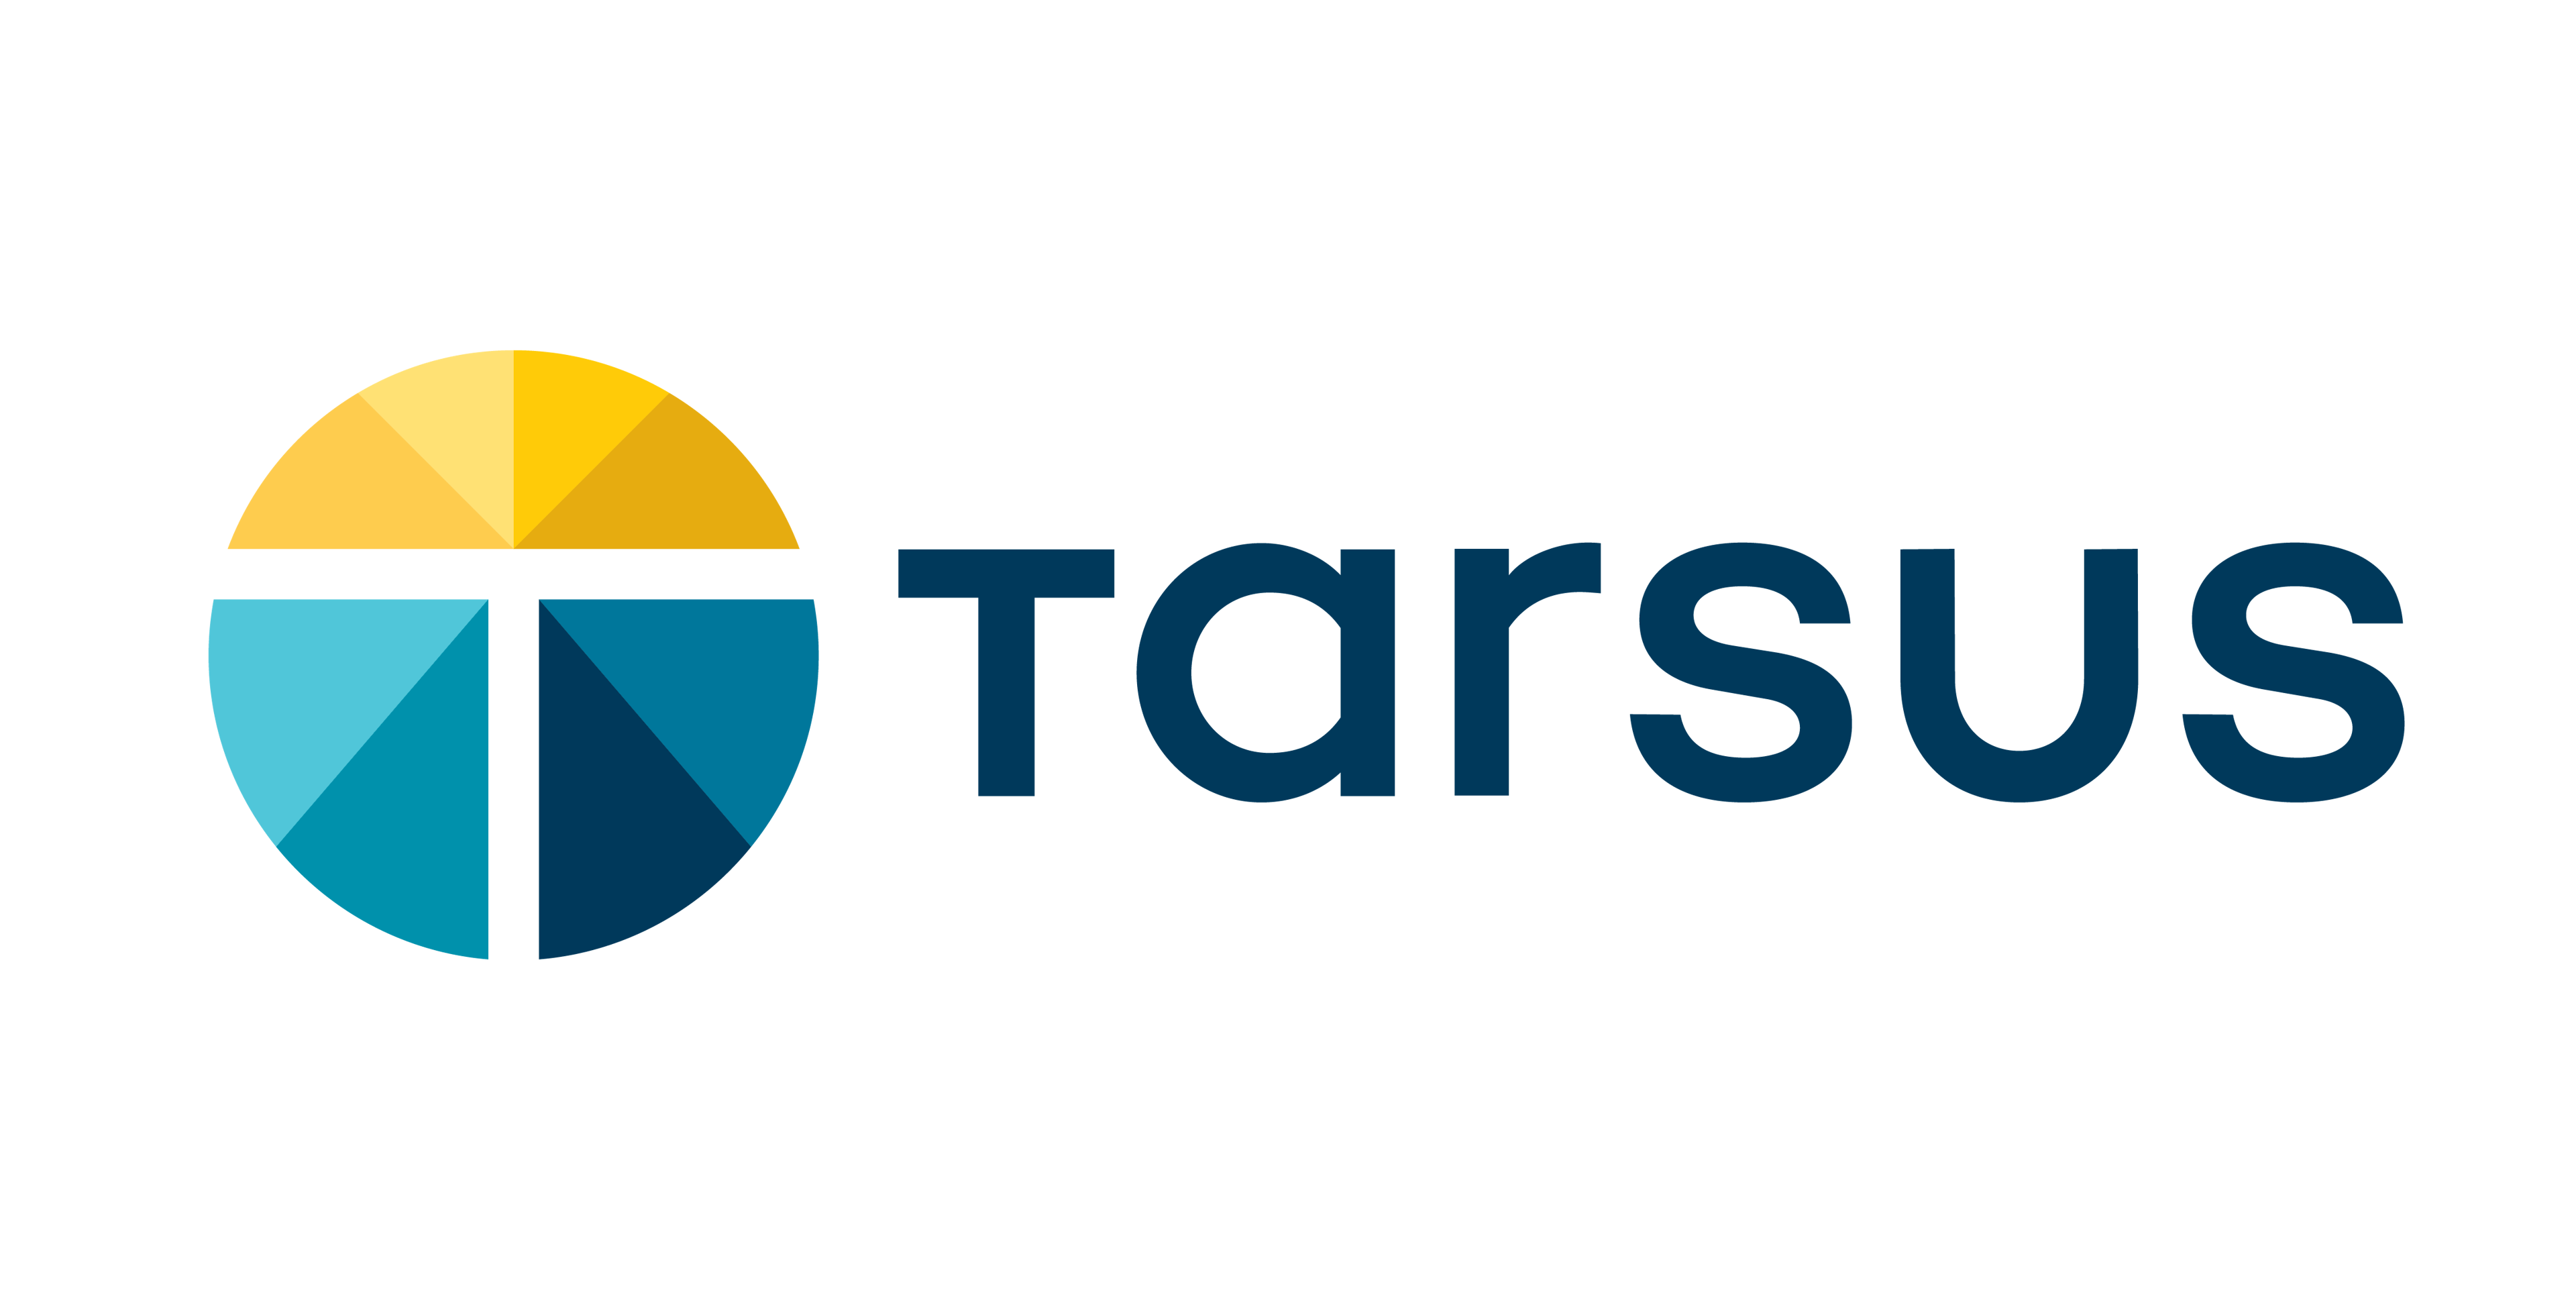 Tarsus Pharmaceuticals